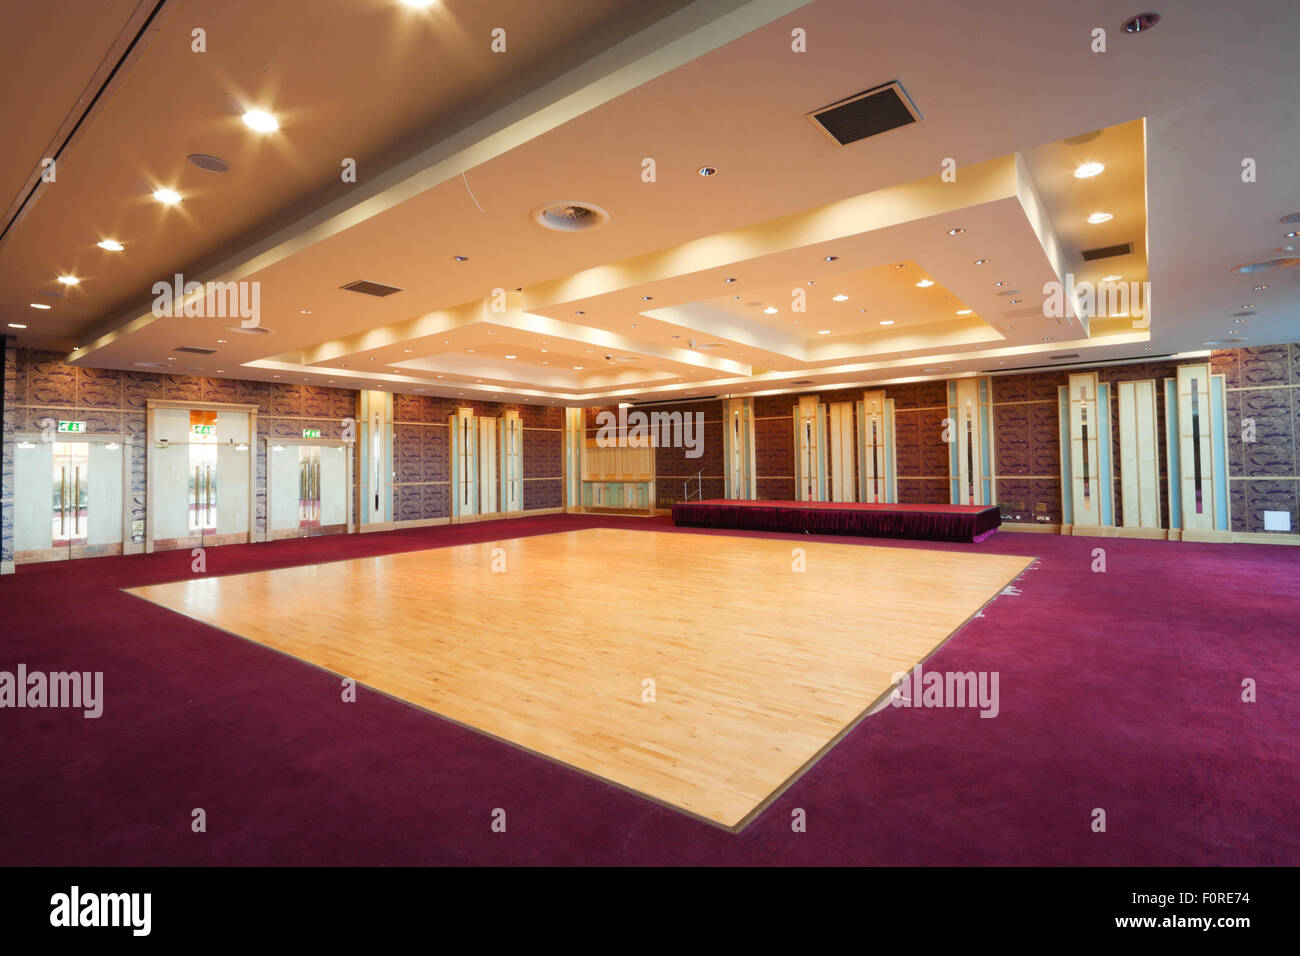 Riesige Halle Interieur mit hölzernen Tanzboden, roter Teppich und Decke mit Lichtern im Hotel Stockfoto